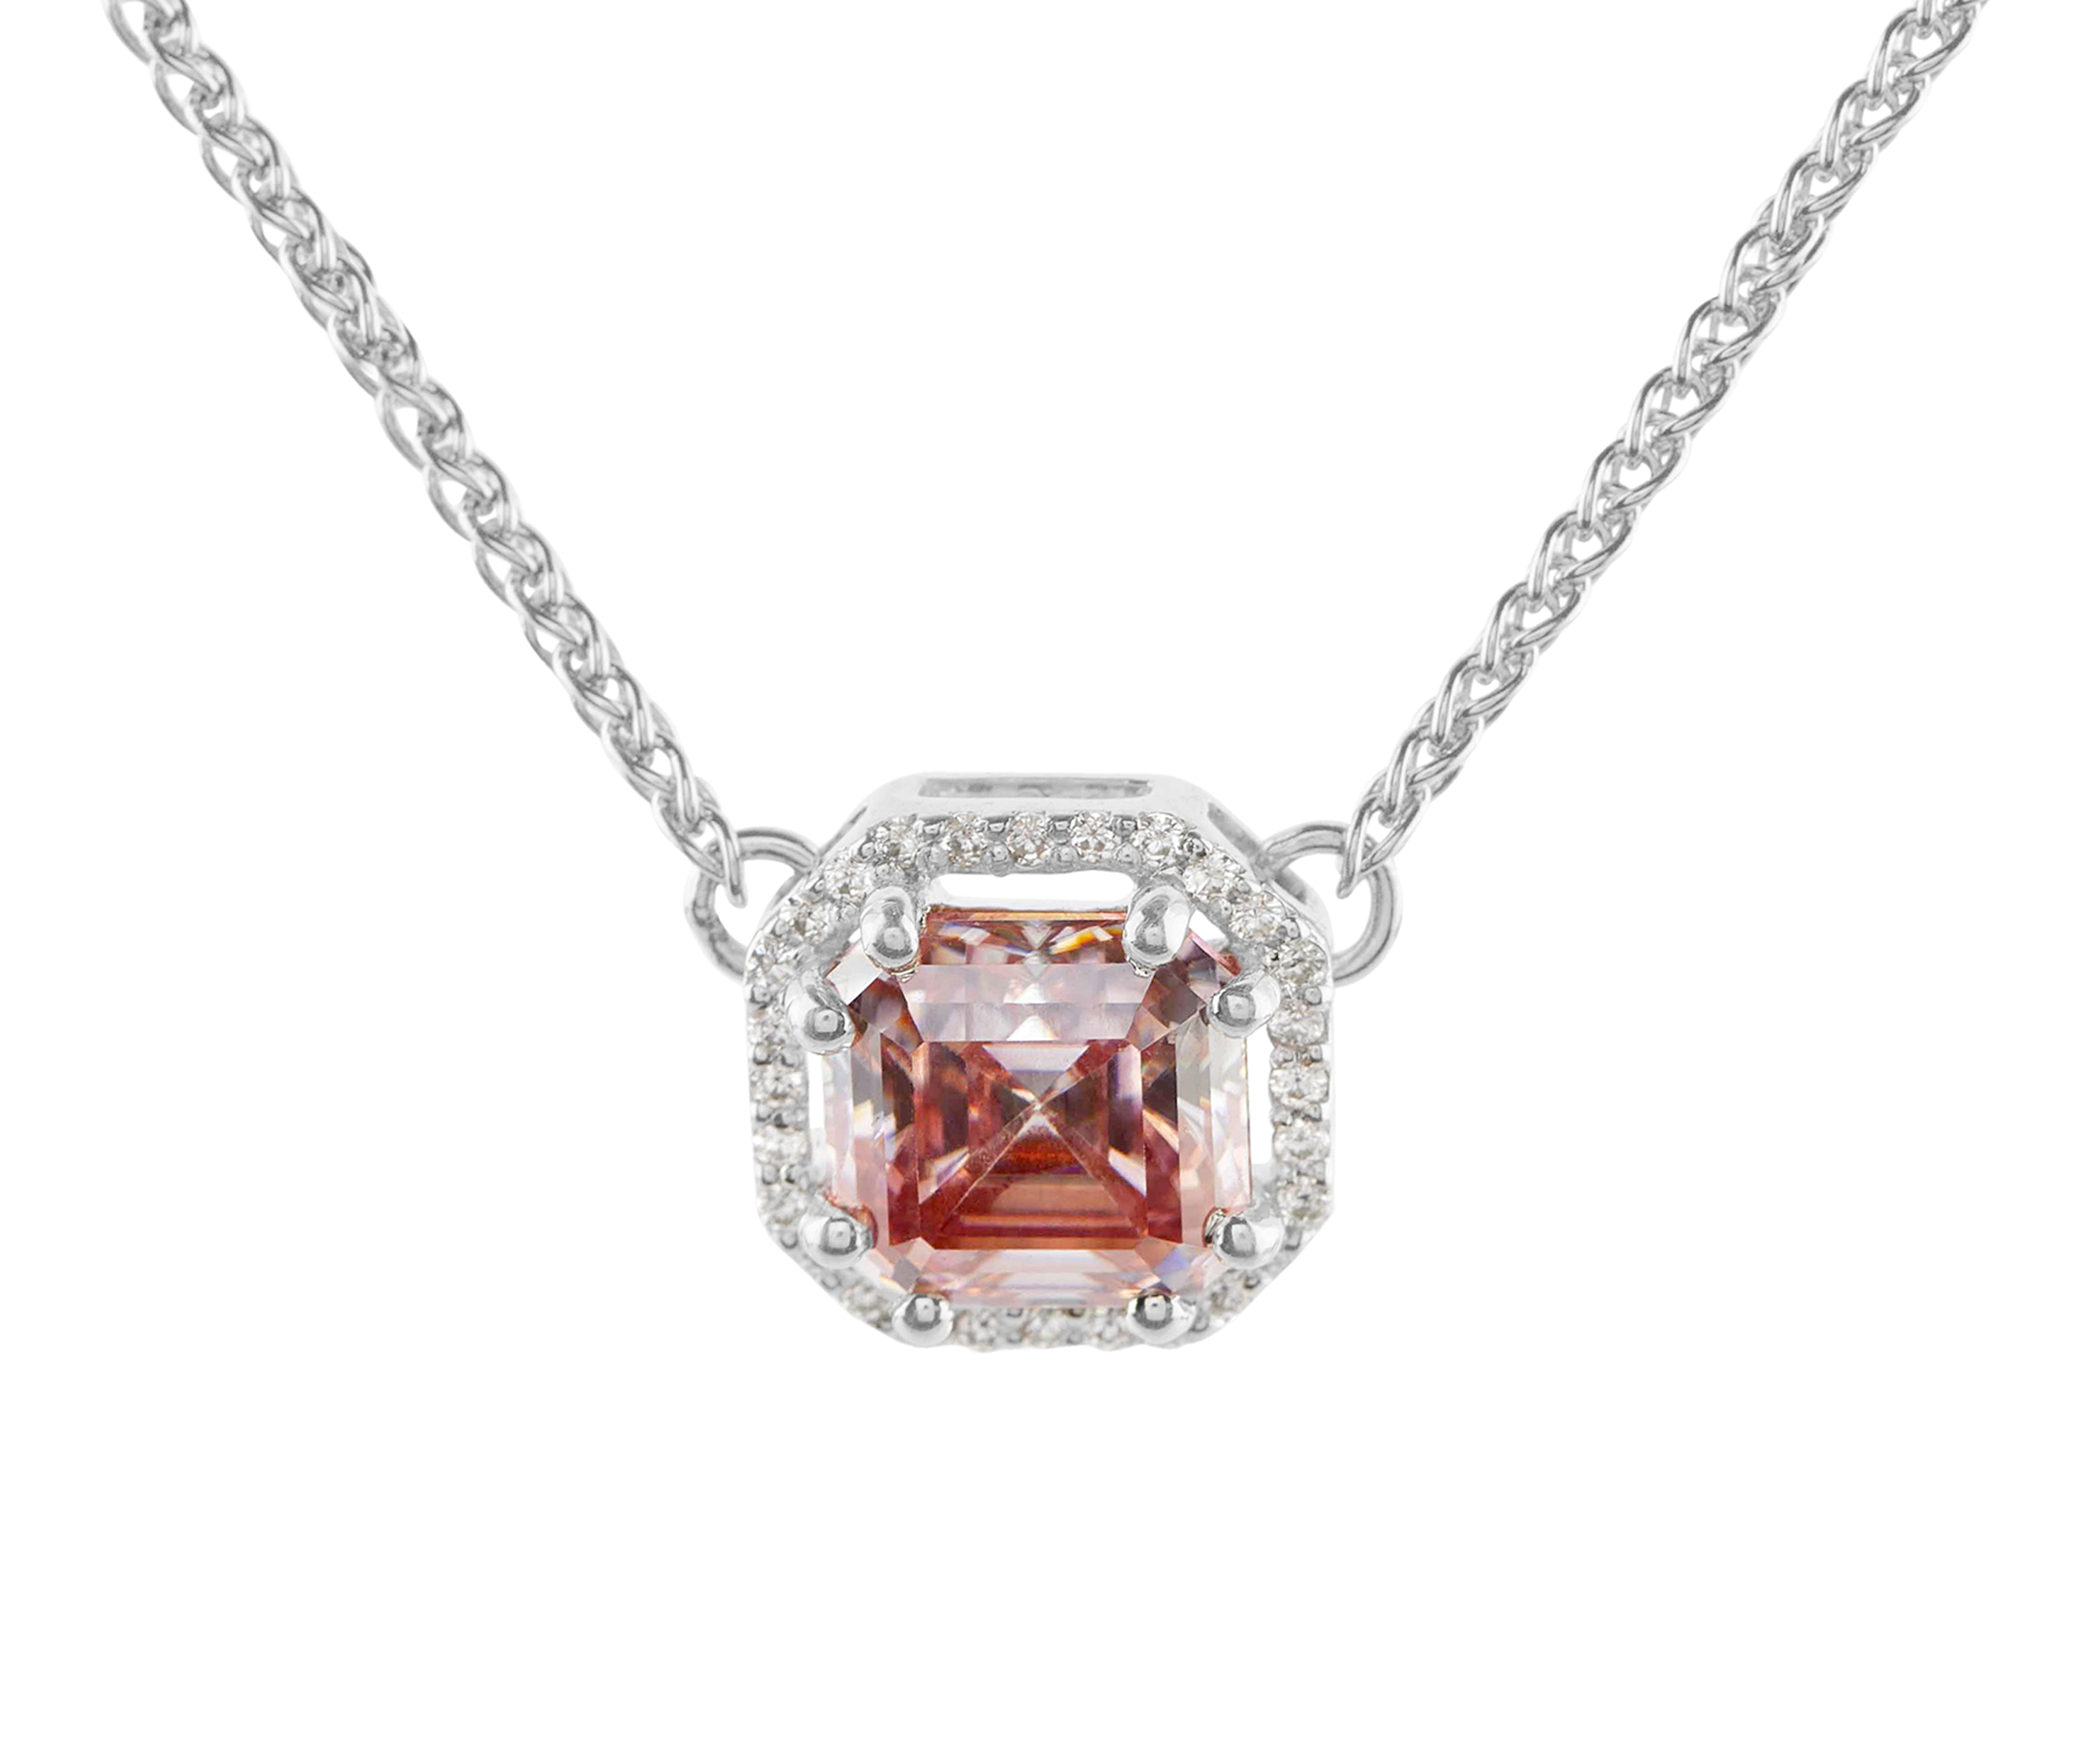 Buy Blush pink moissanite stone pendant price - Anemoii